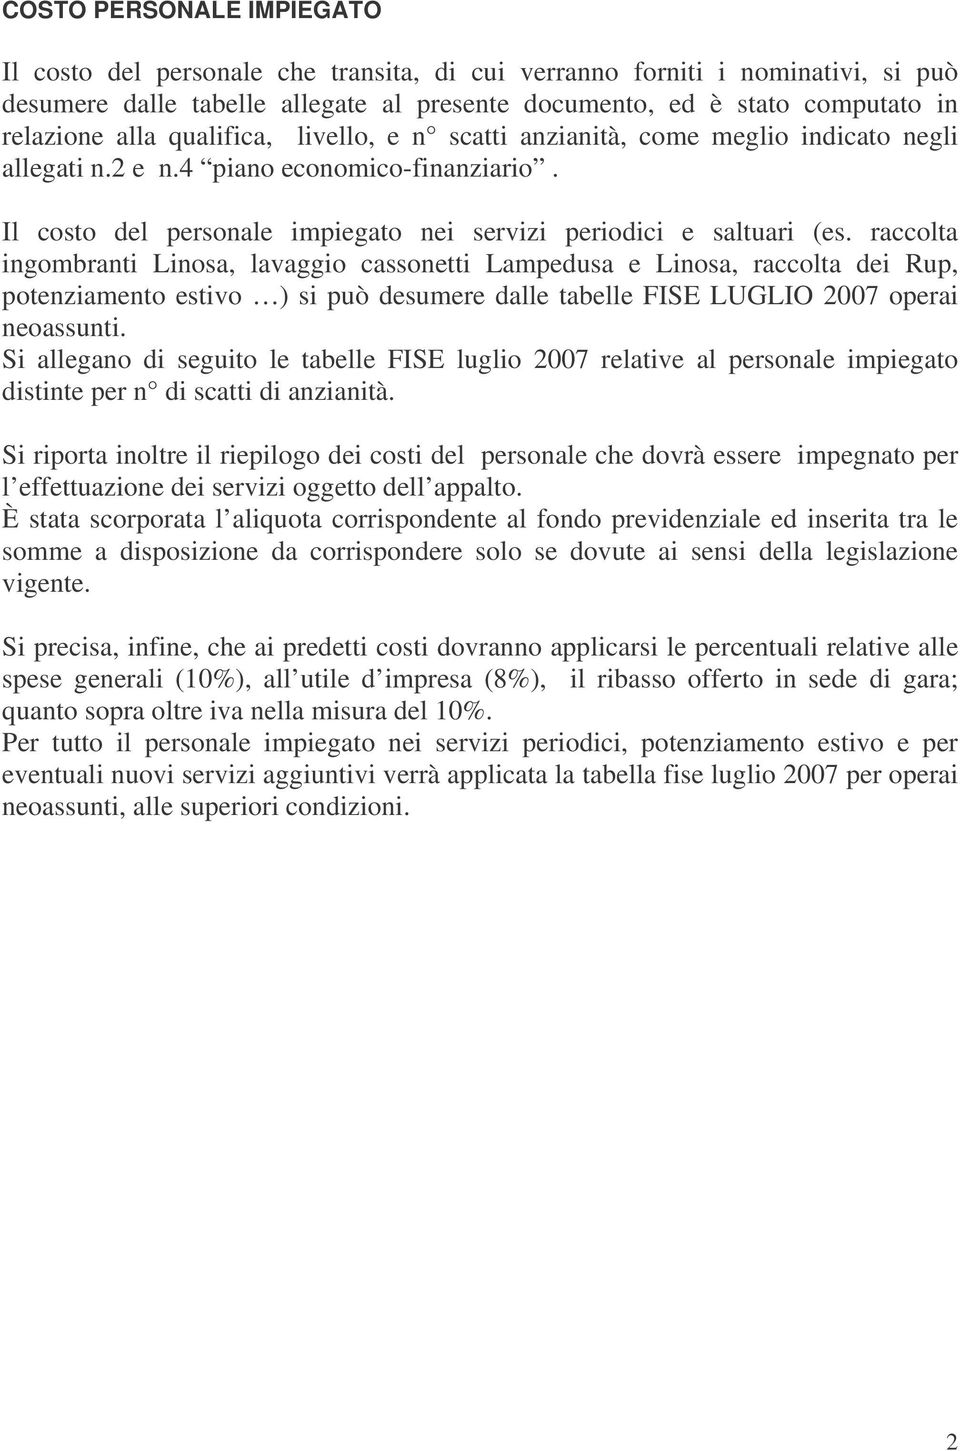 raccolta ingombranti Linosa, lavaggio cassonetti Lampedusa e Linosa, raccolta dei Rup, potenziamento estivo ) si può desumere dalle tabelle FISE LUGLIO 2007 operai neoassunti.